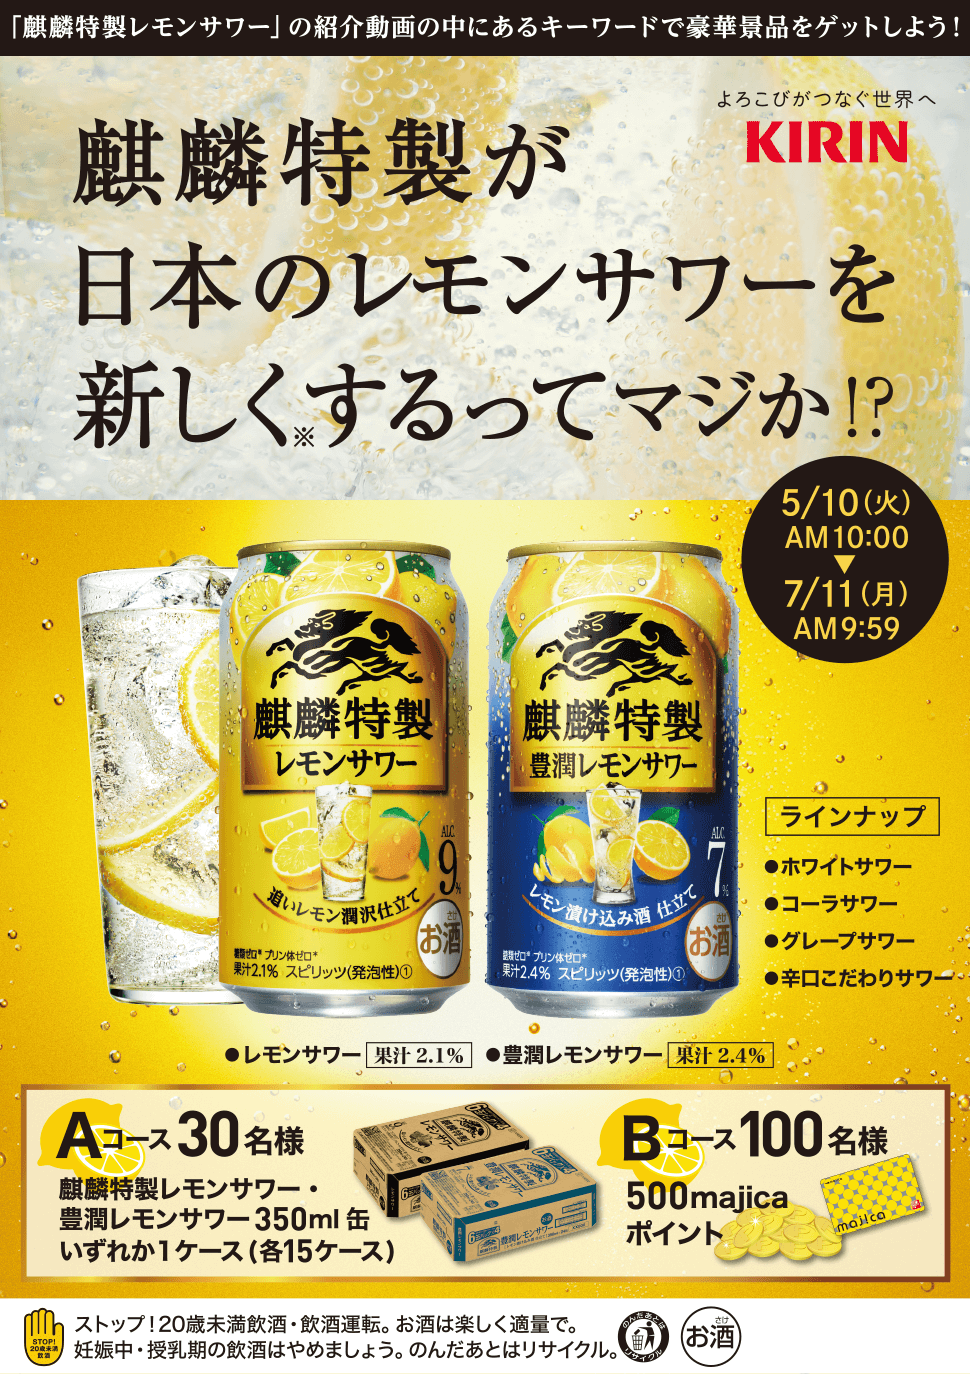 麒麟特製が日本のレモンサワーを新しくするってマジか!?